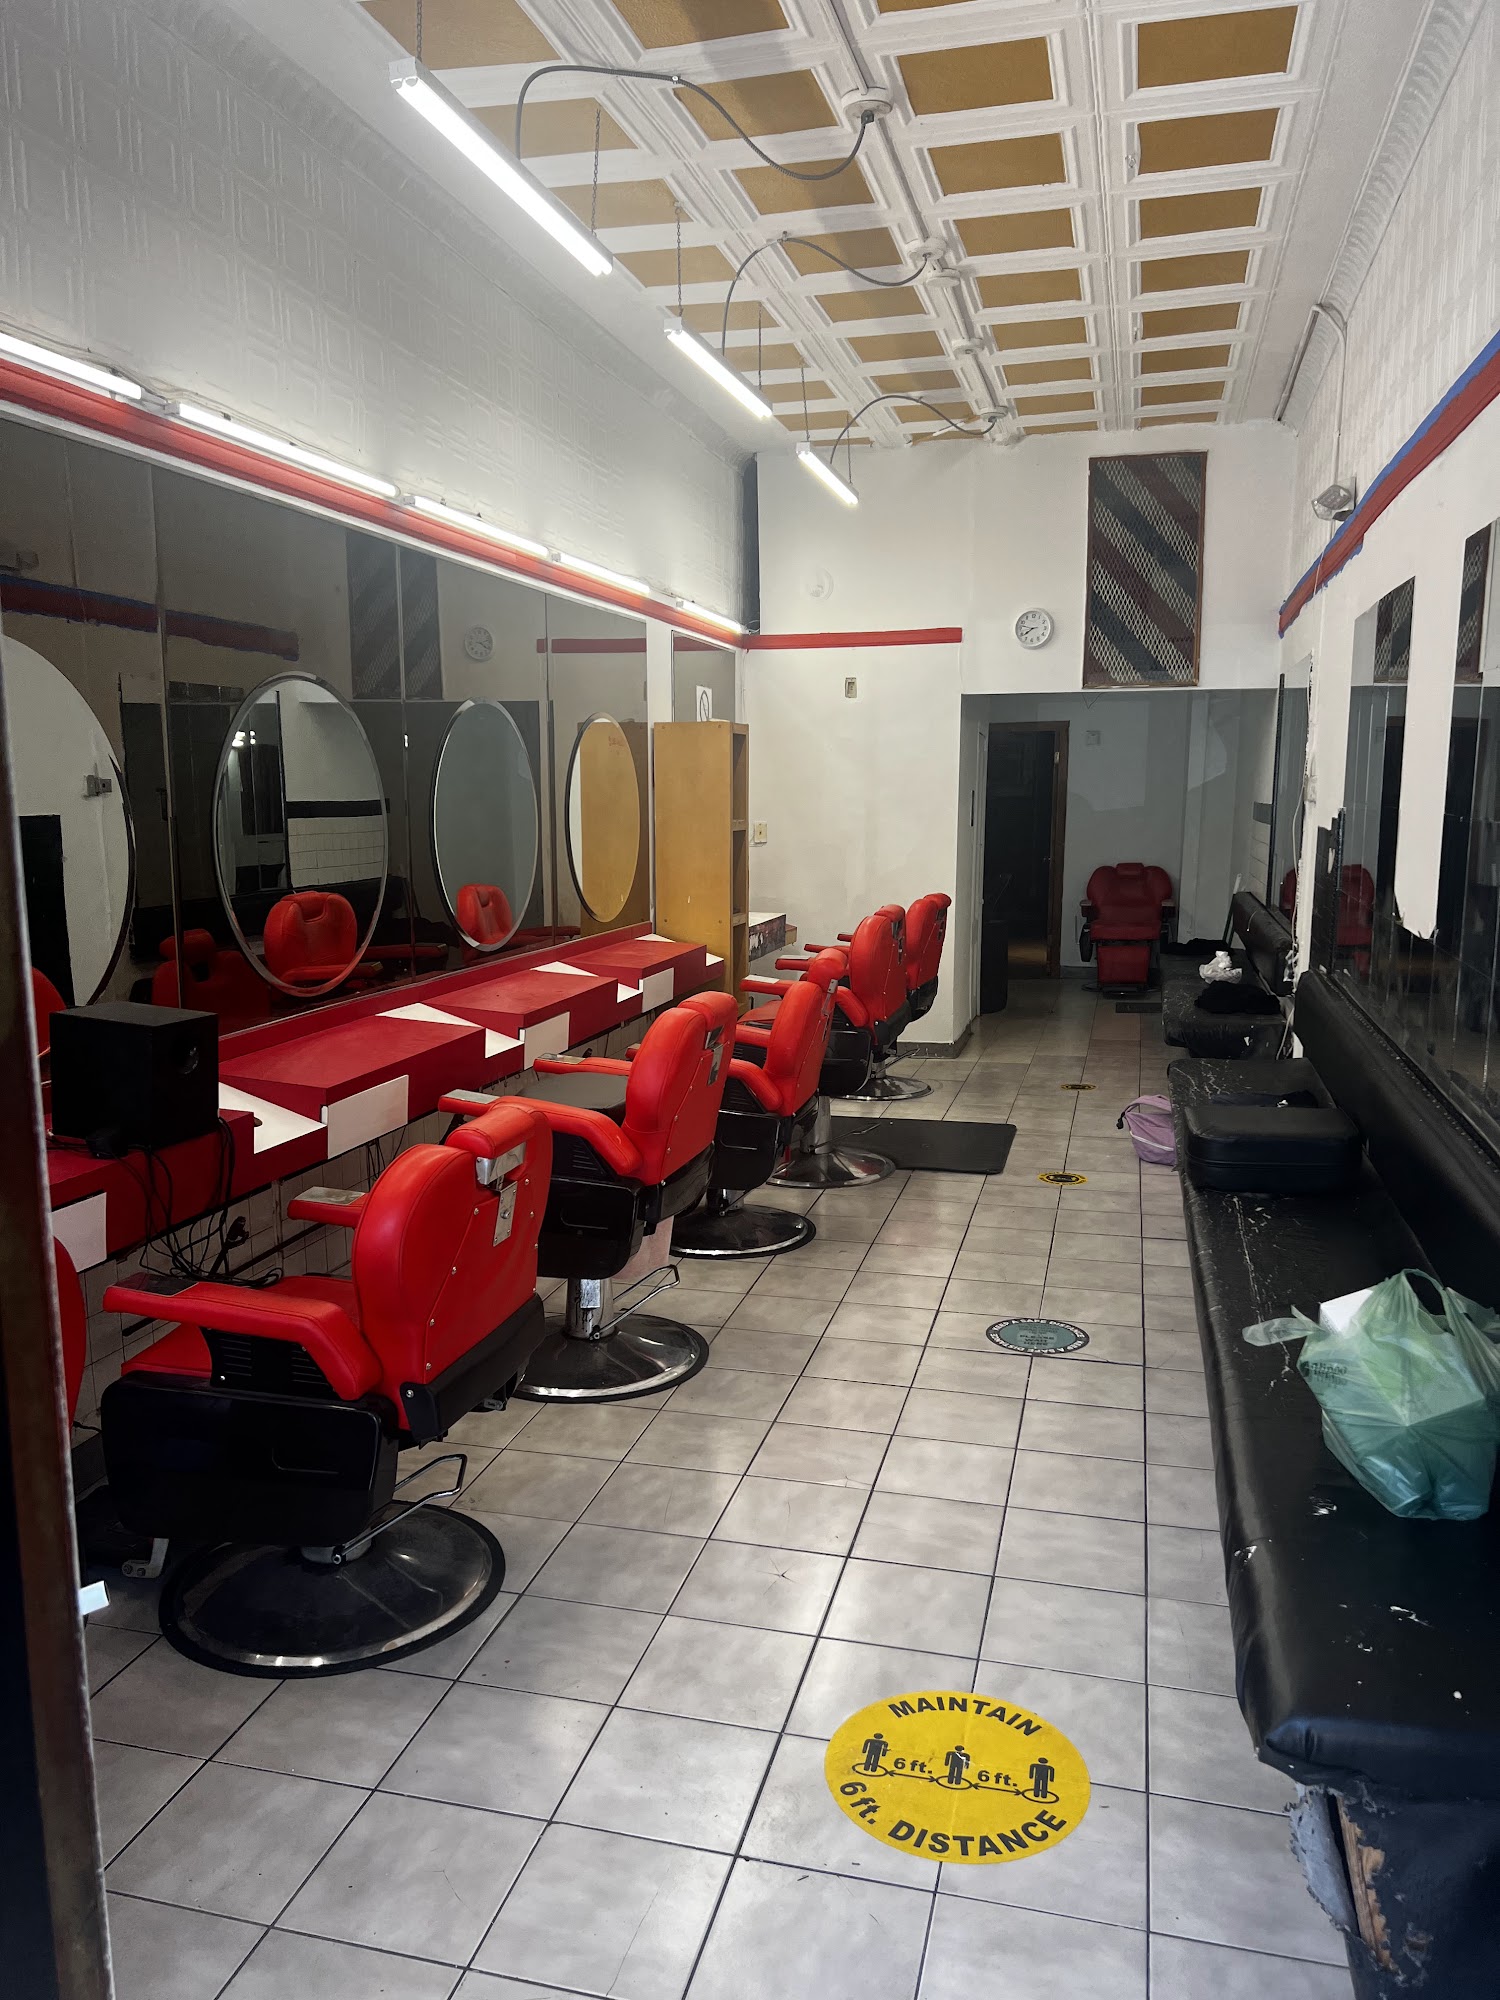 Engel’s barbershop